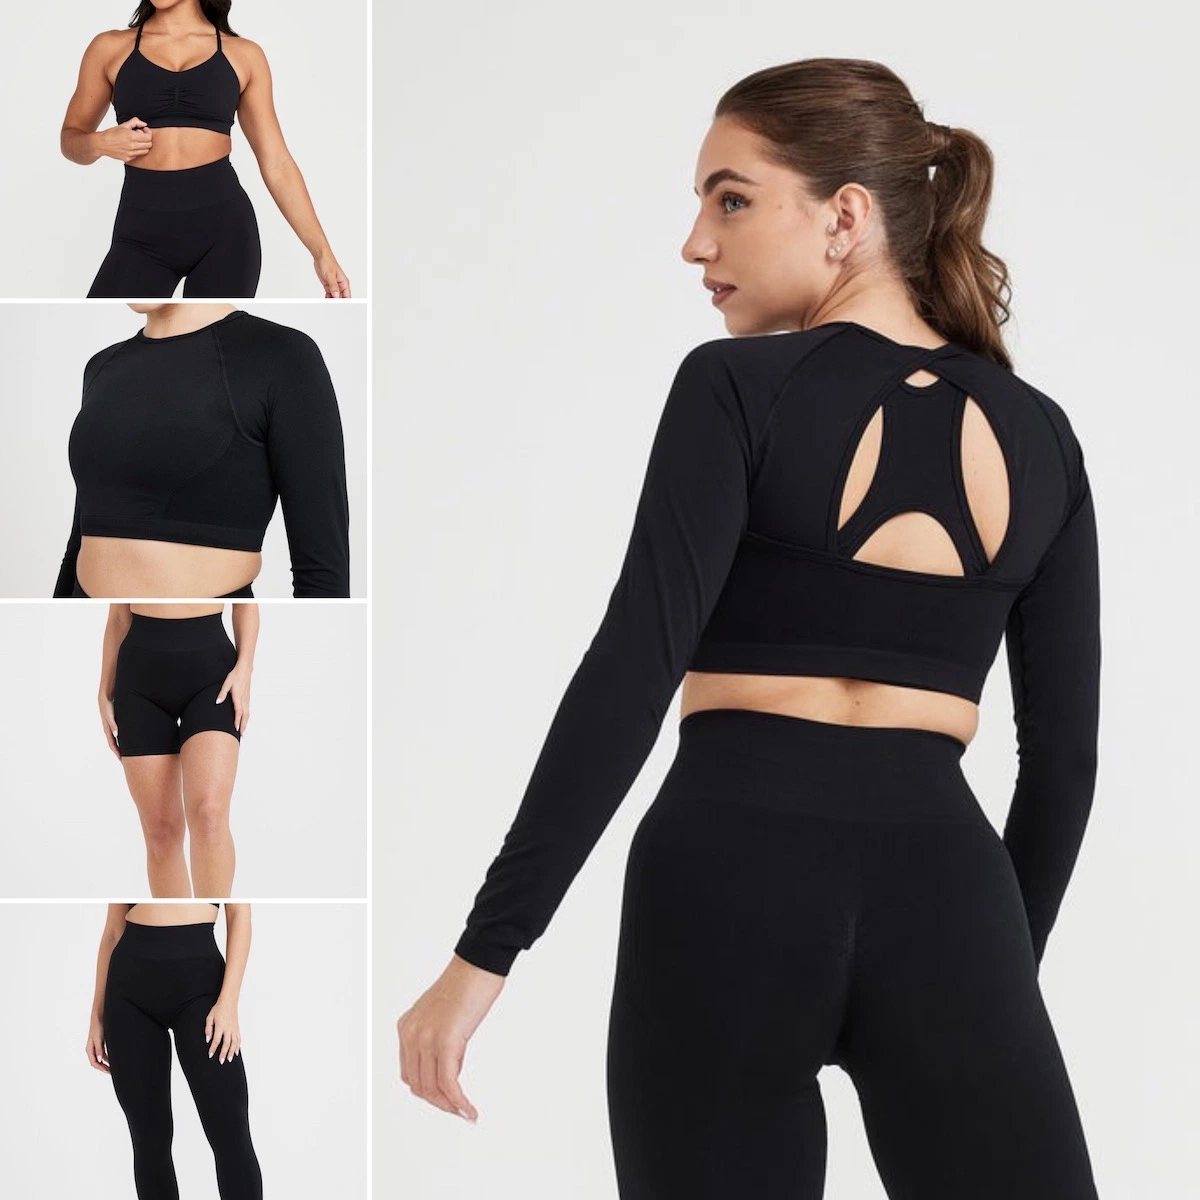 Großhandel 6 Stück Exqusite Sexy Open Back nahtlose Yoga Workout Kleidung für Frauen, Custom Gym BH + Crop Top + Laufshorts + Leggings Qualität Activewear-Set